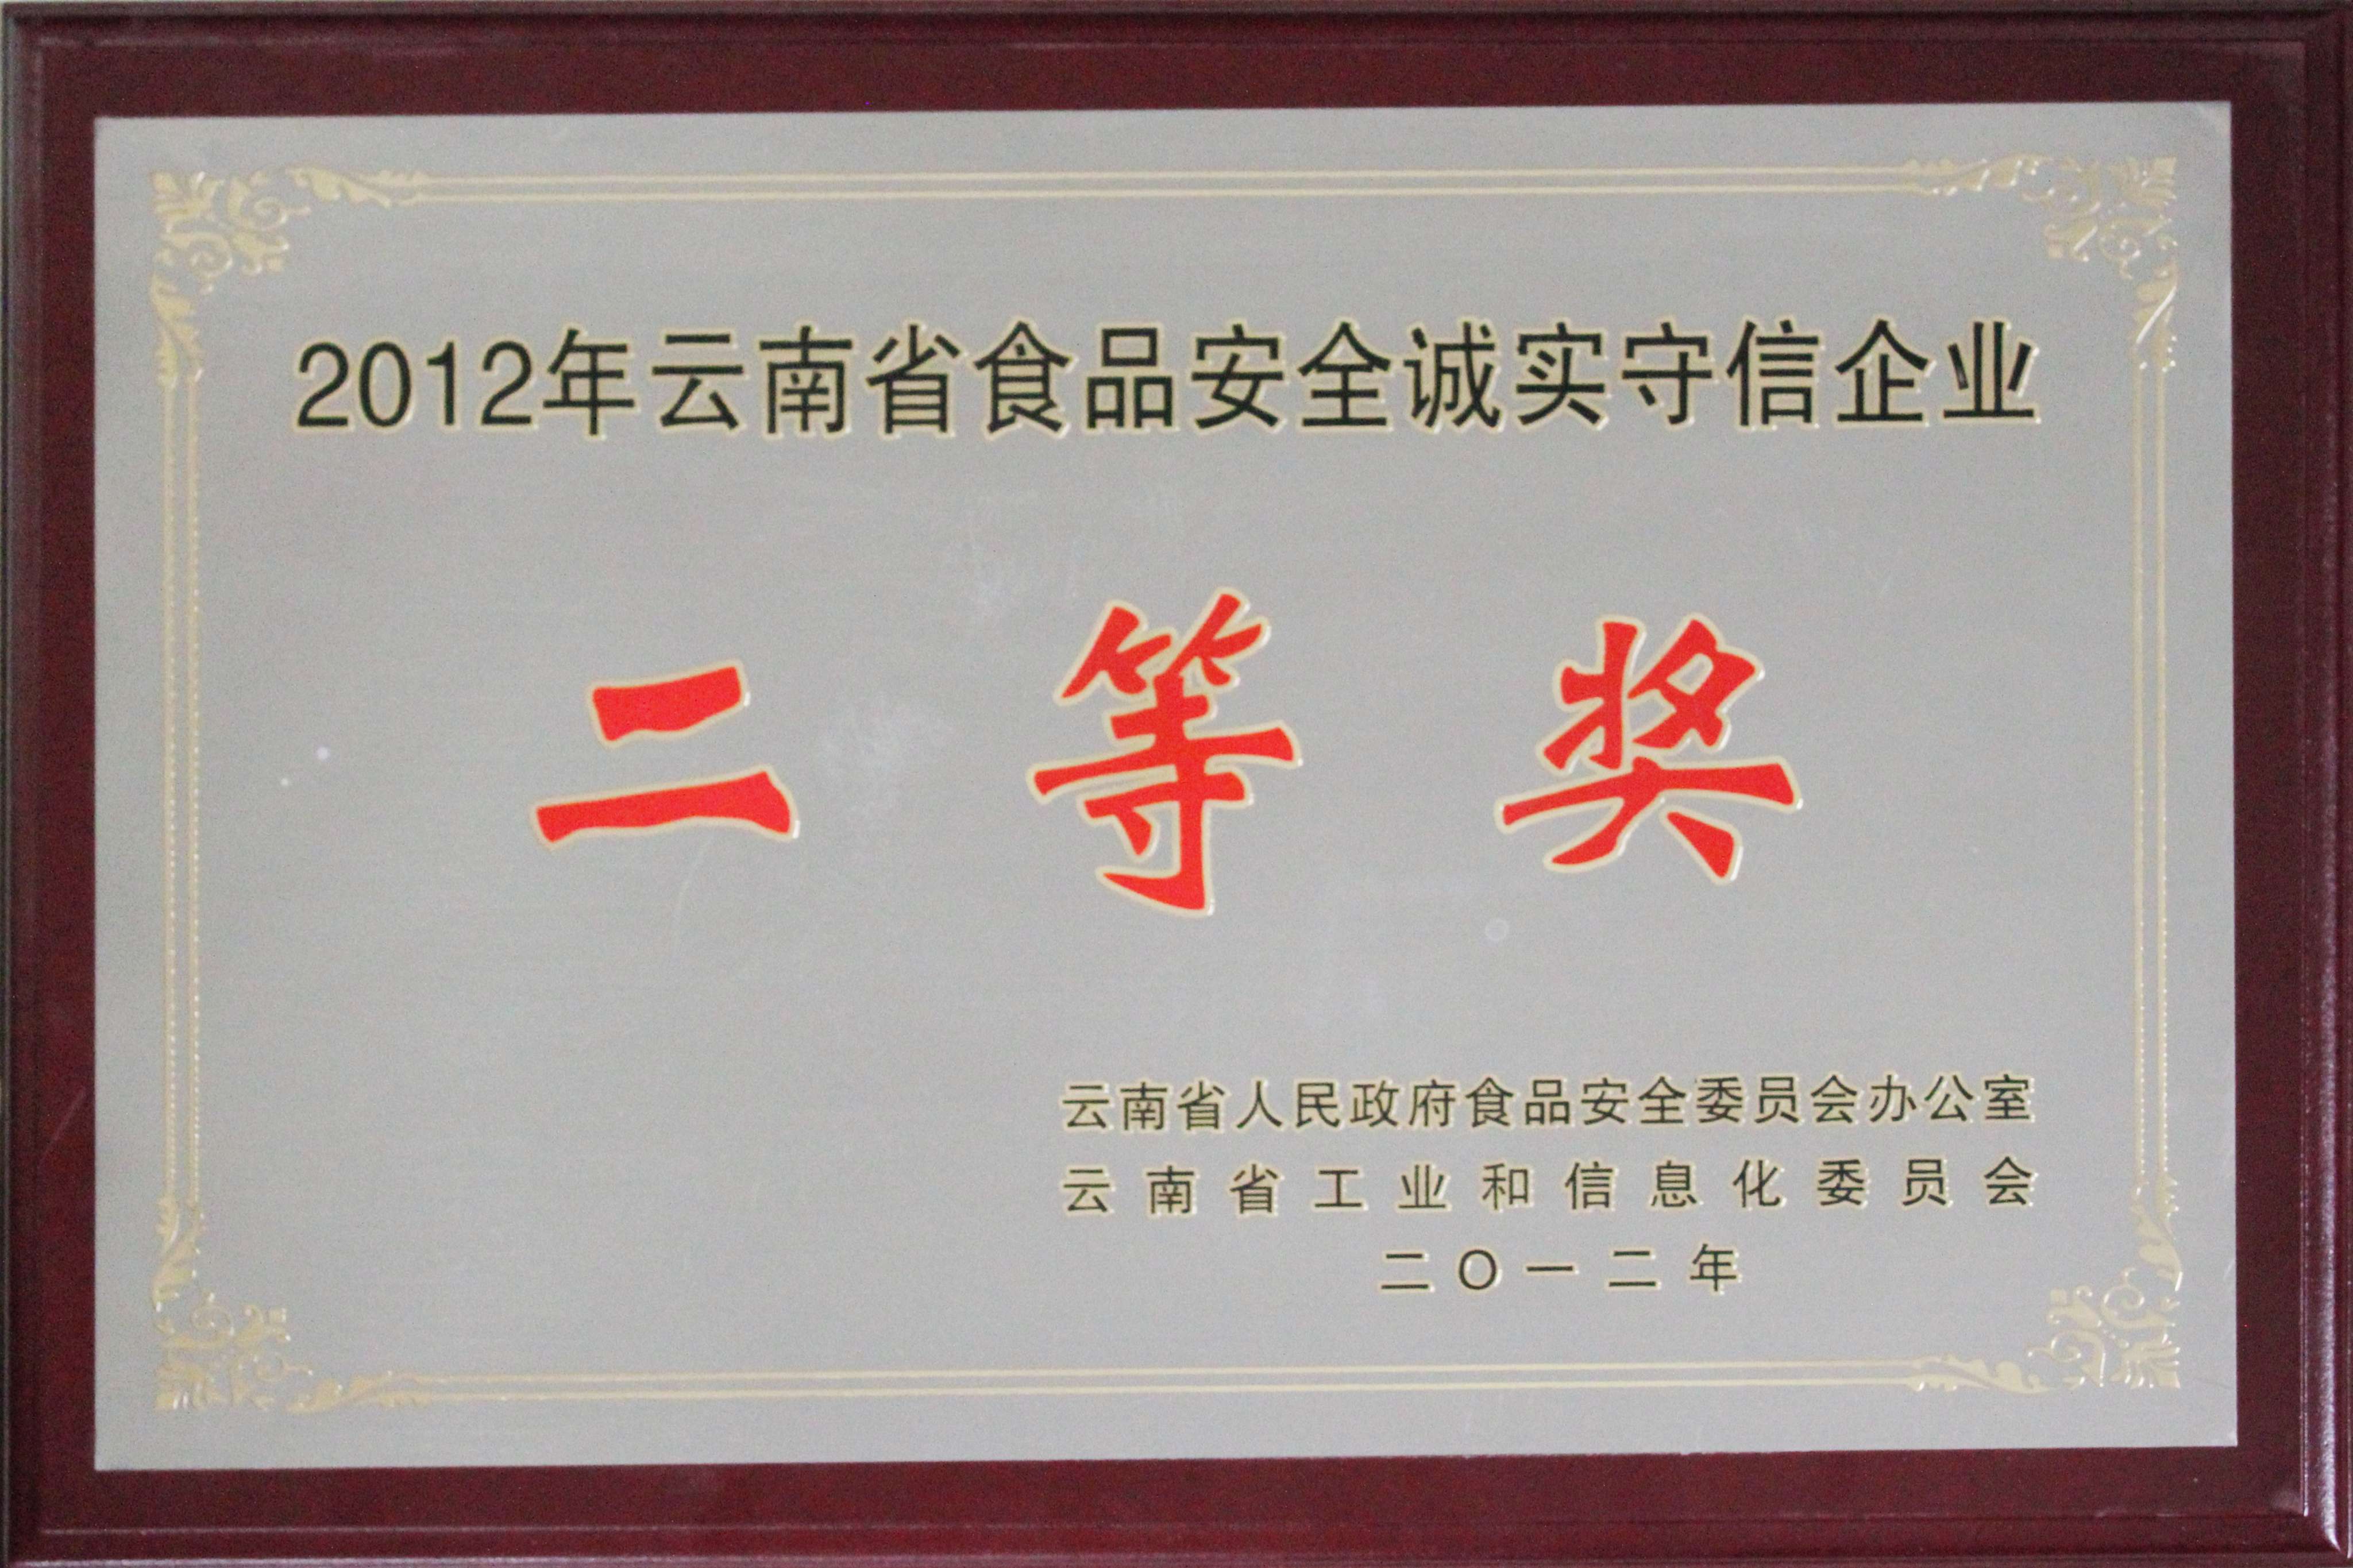 2012年公司被云南省人民政府食品安全委員會辦公室、云南省工業和信息化委員會評為“2012年云南省食